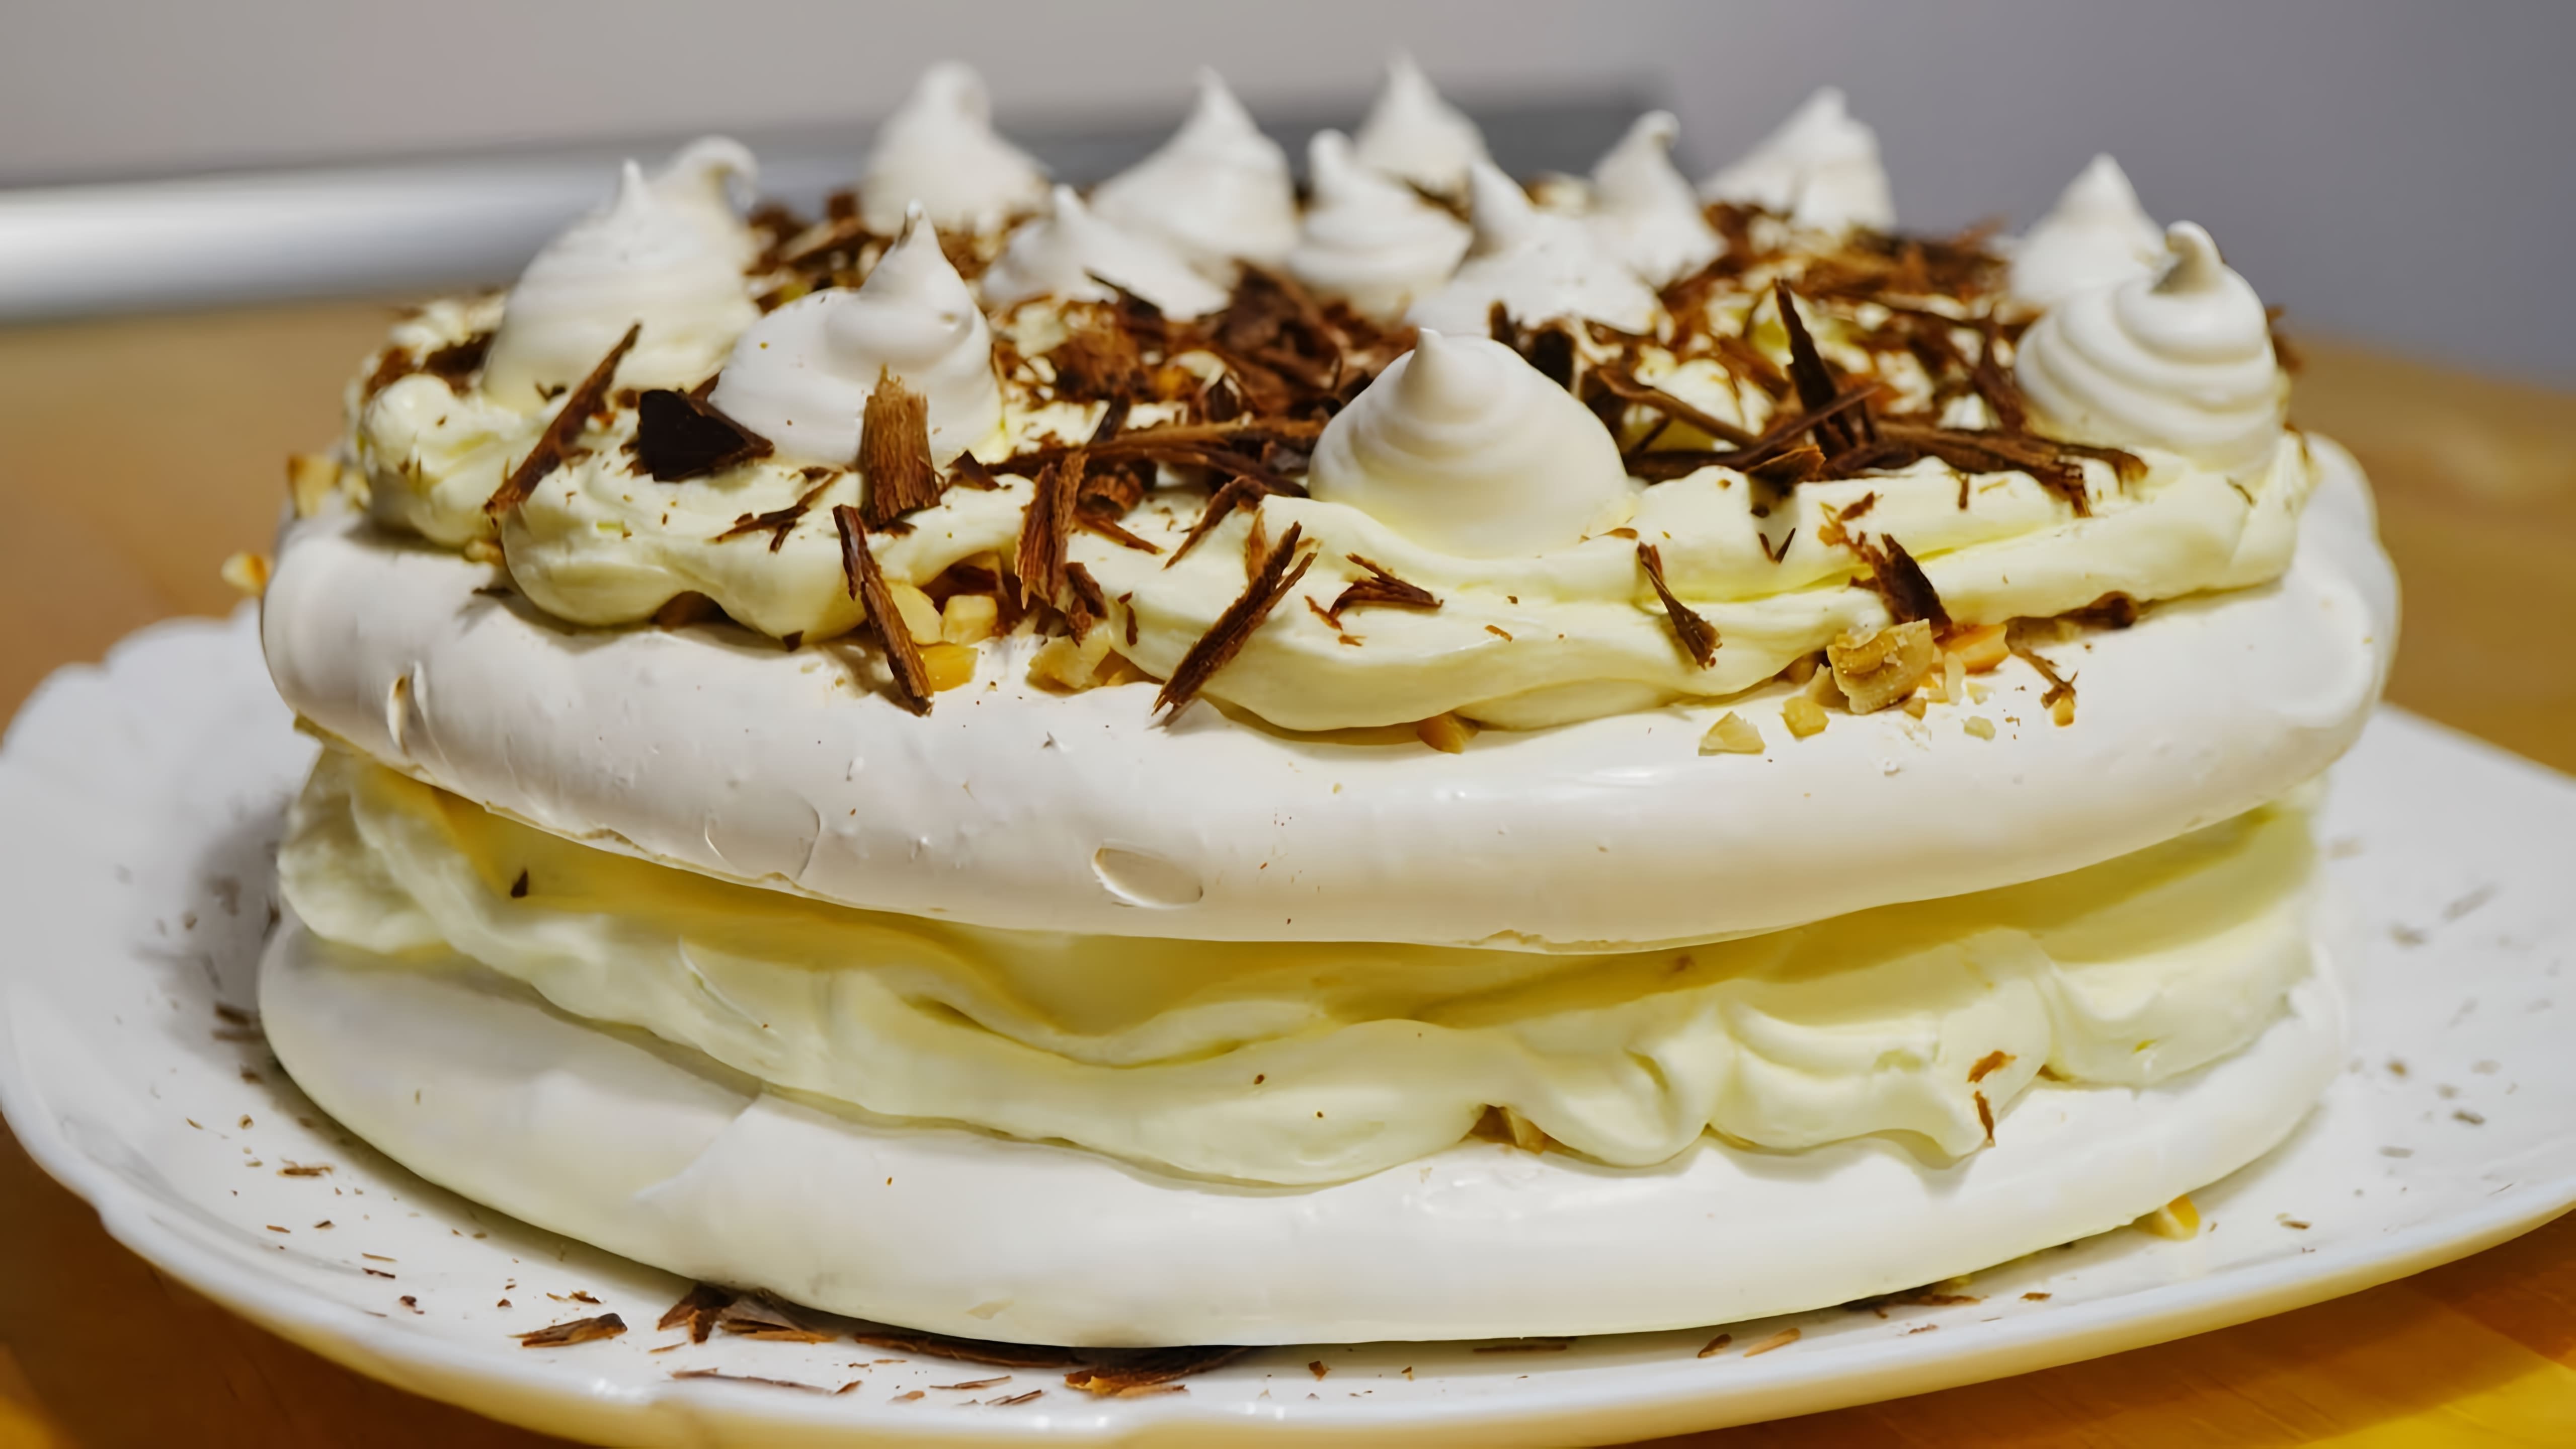 В этом видео демонстрируется процесс приготовления торта Безе с кремом "Пломбир" (Швейцарская меренга)